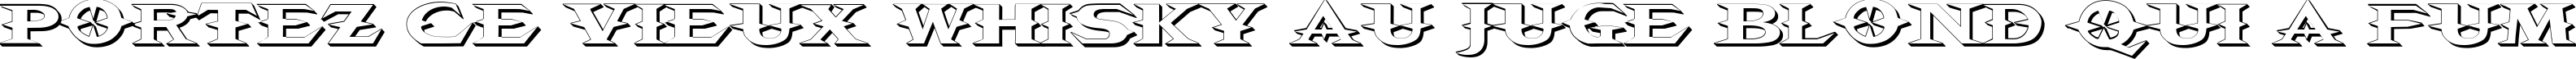 Пример написания шрифтом VTCBelialsBlade3d текста на французском